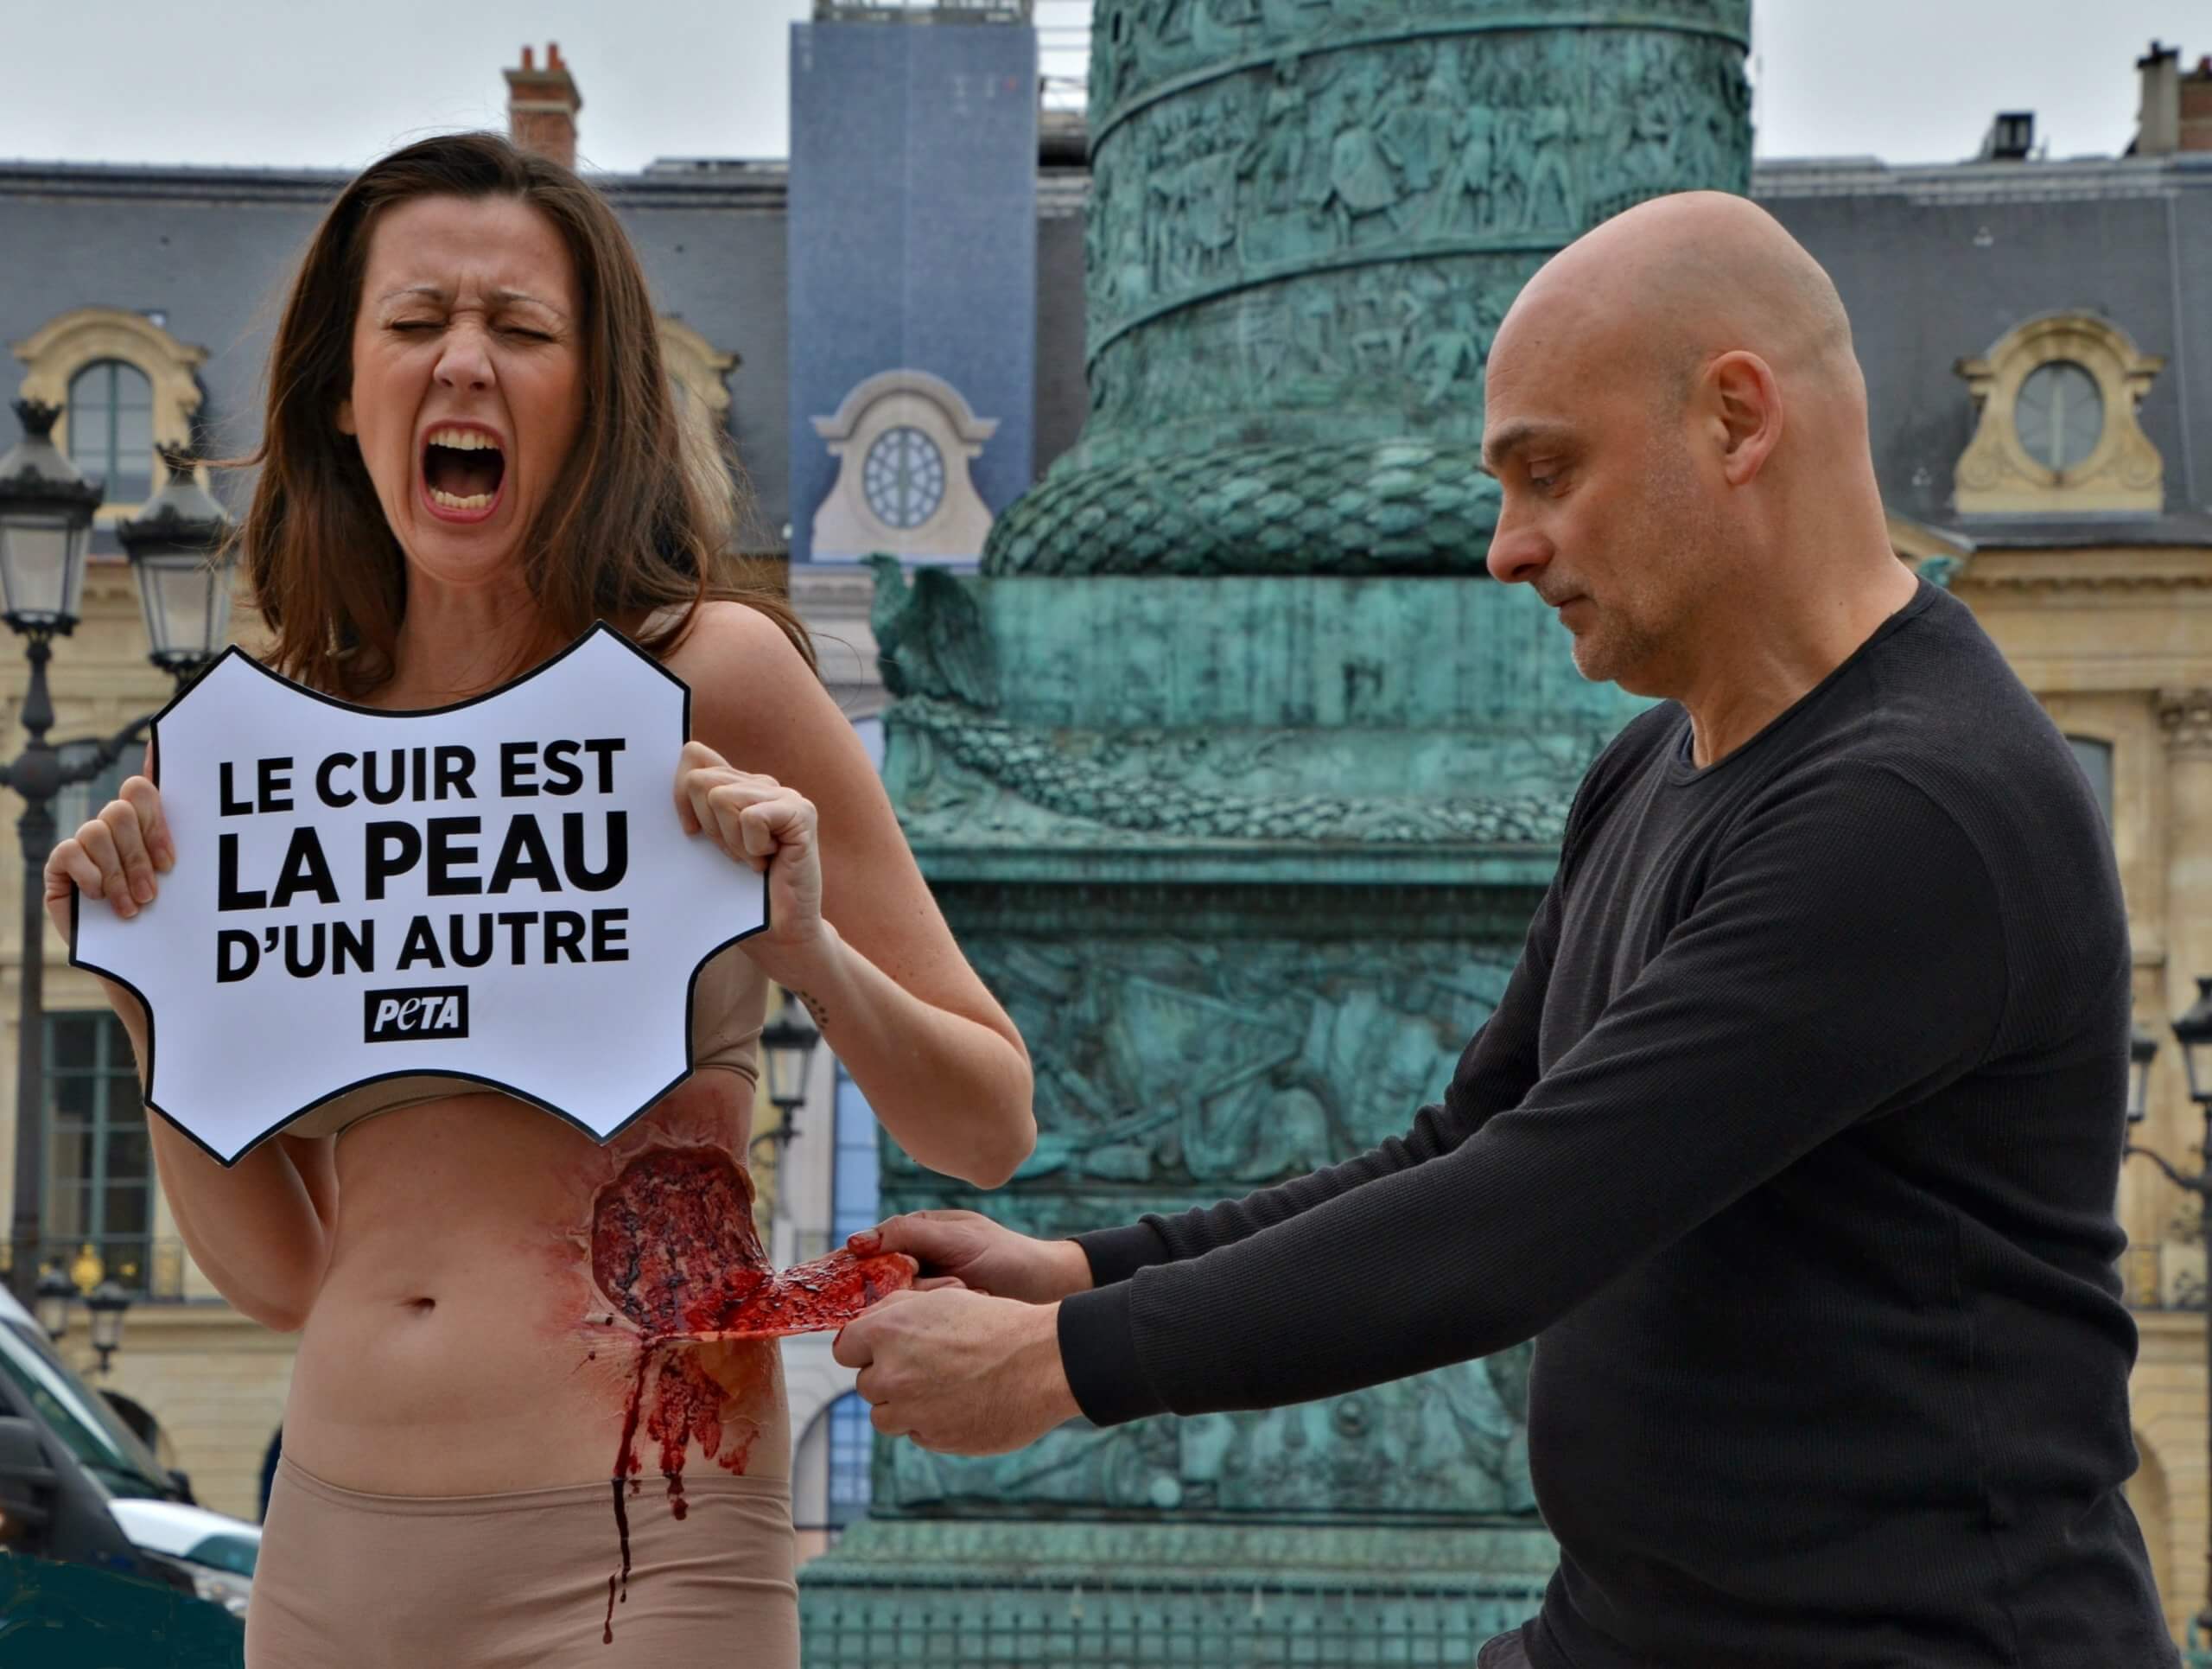 Une femme se fait « écorcher vive » pour protester contre l’utilisation du cuir